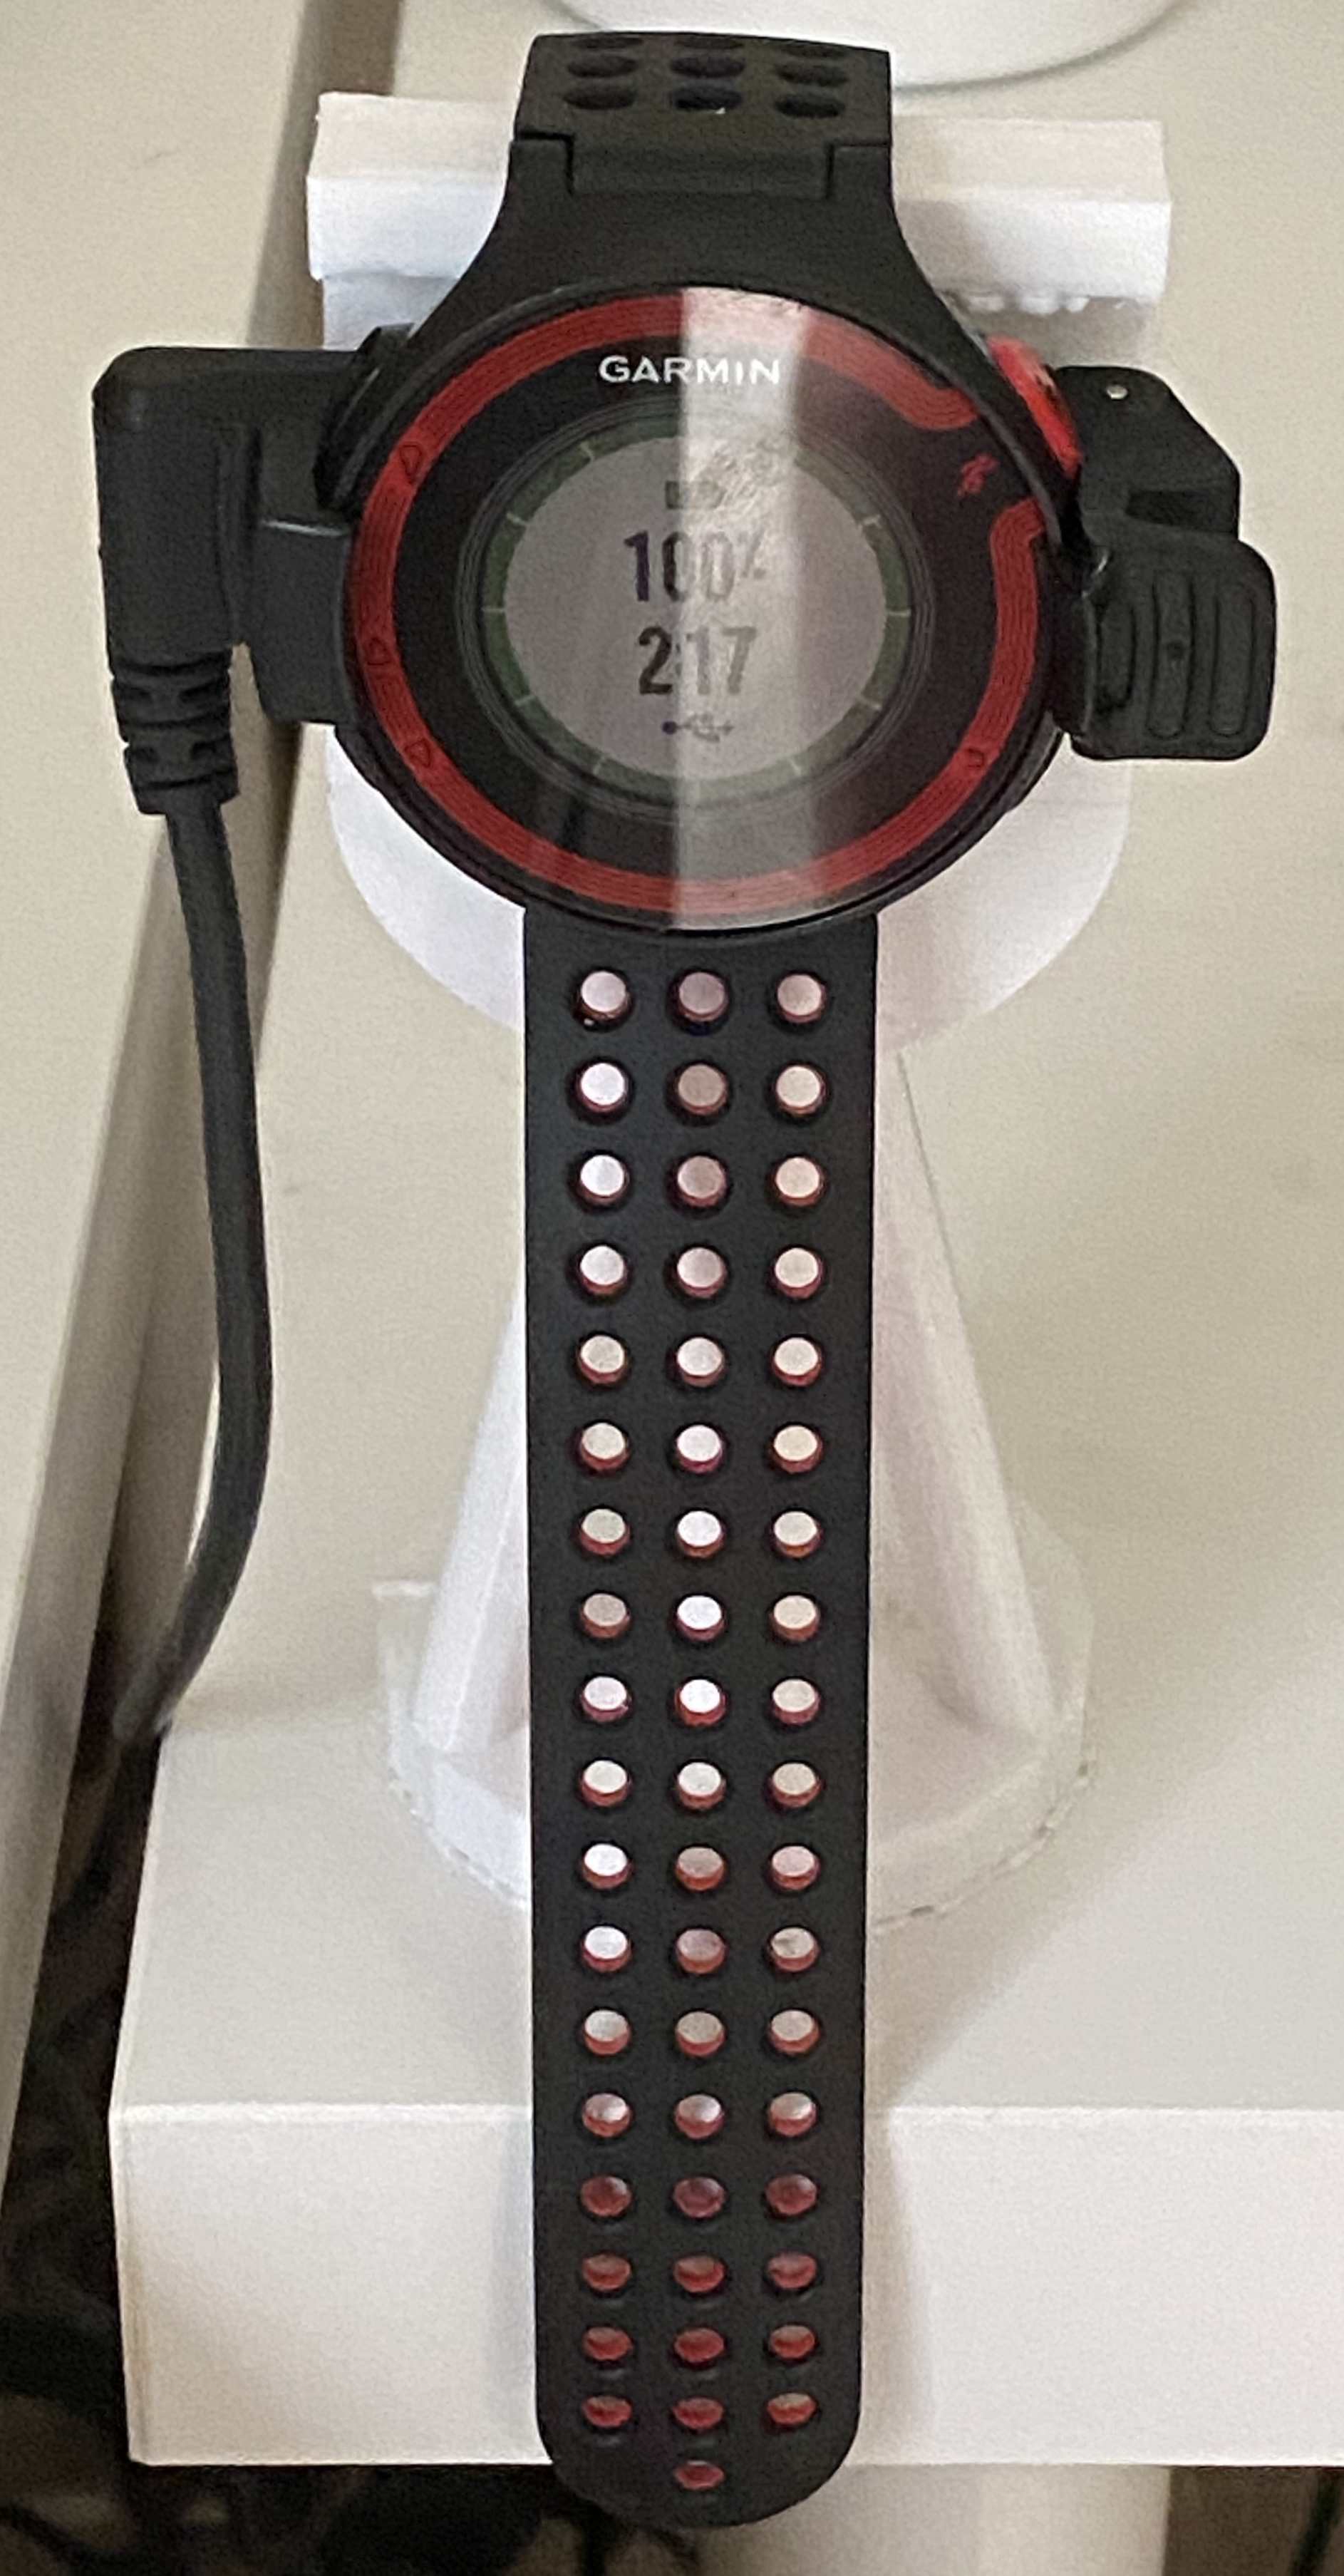 Watch holder